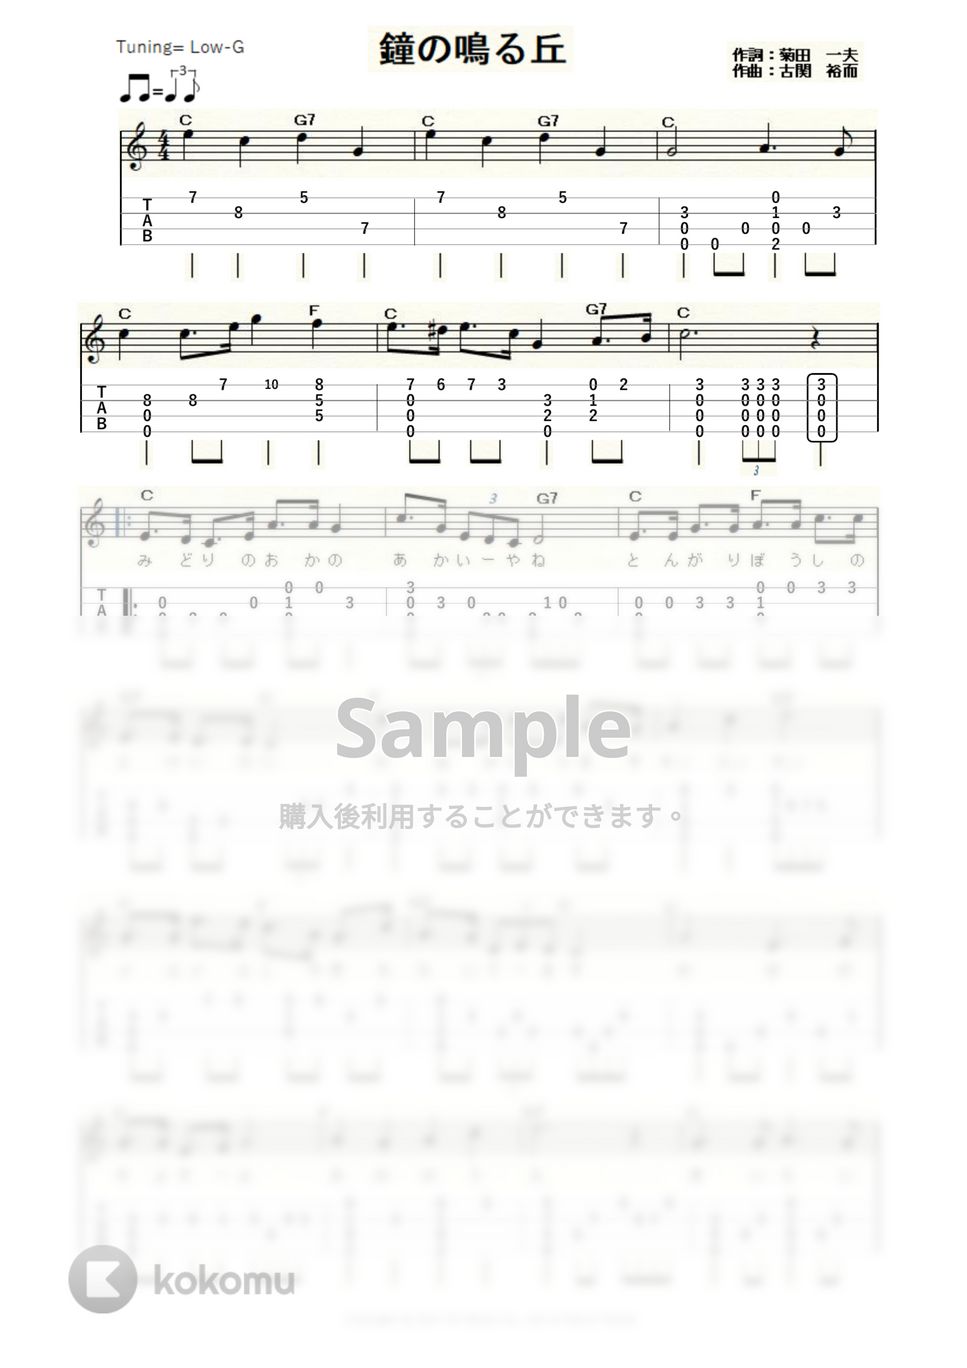 古関裕而 - 鐘の鳴る丘 (ｳｸﾚﾚｿﾛ / Low-G / 初～中級) by ukulelepapa